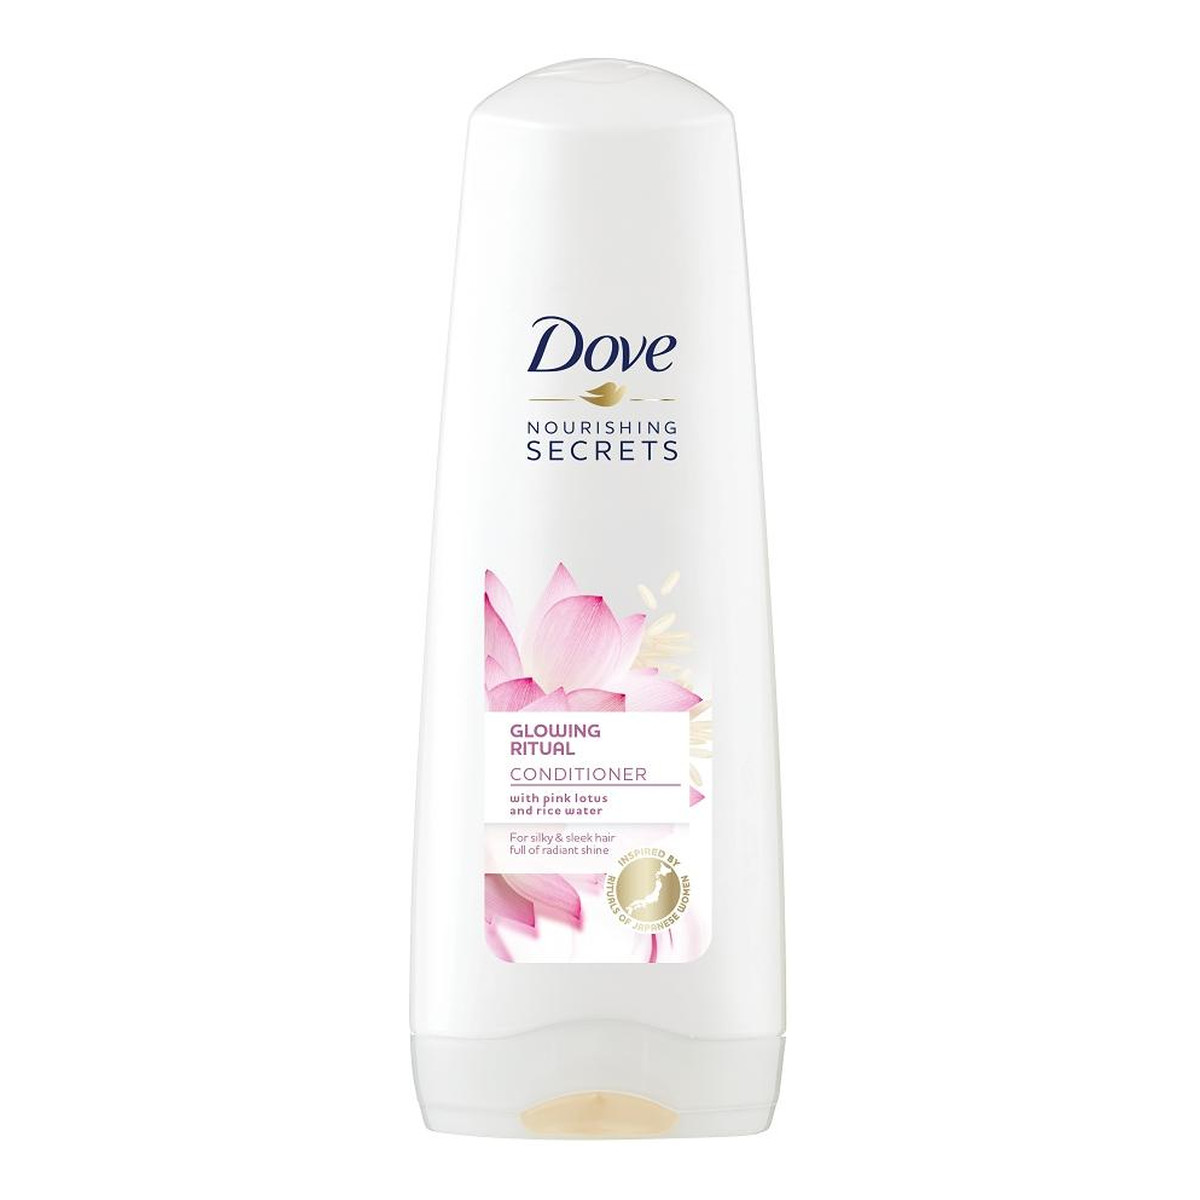 Dove Nourishing Secrets szampon do włosów Pink Lotus & Rice Water 200ml